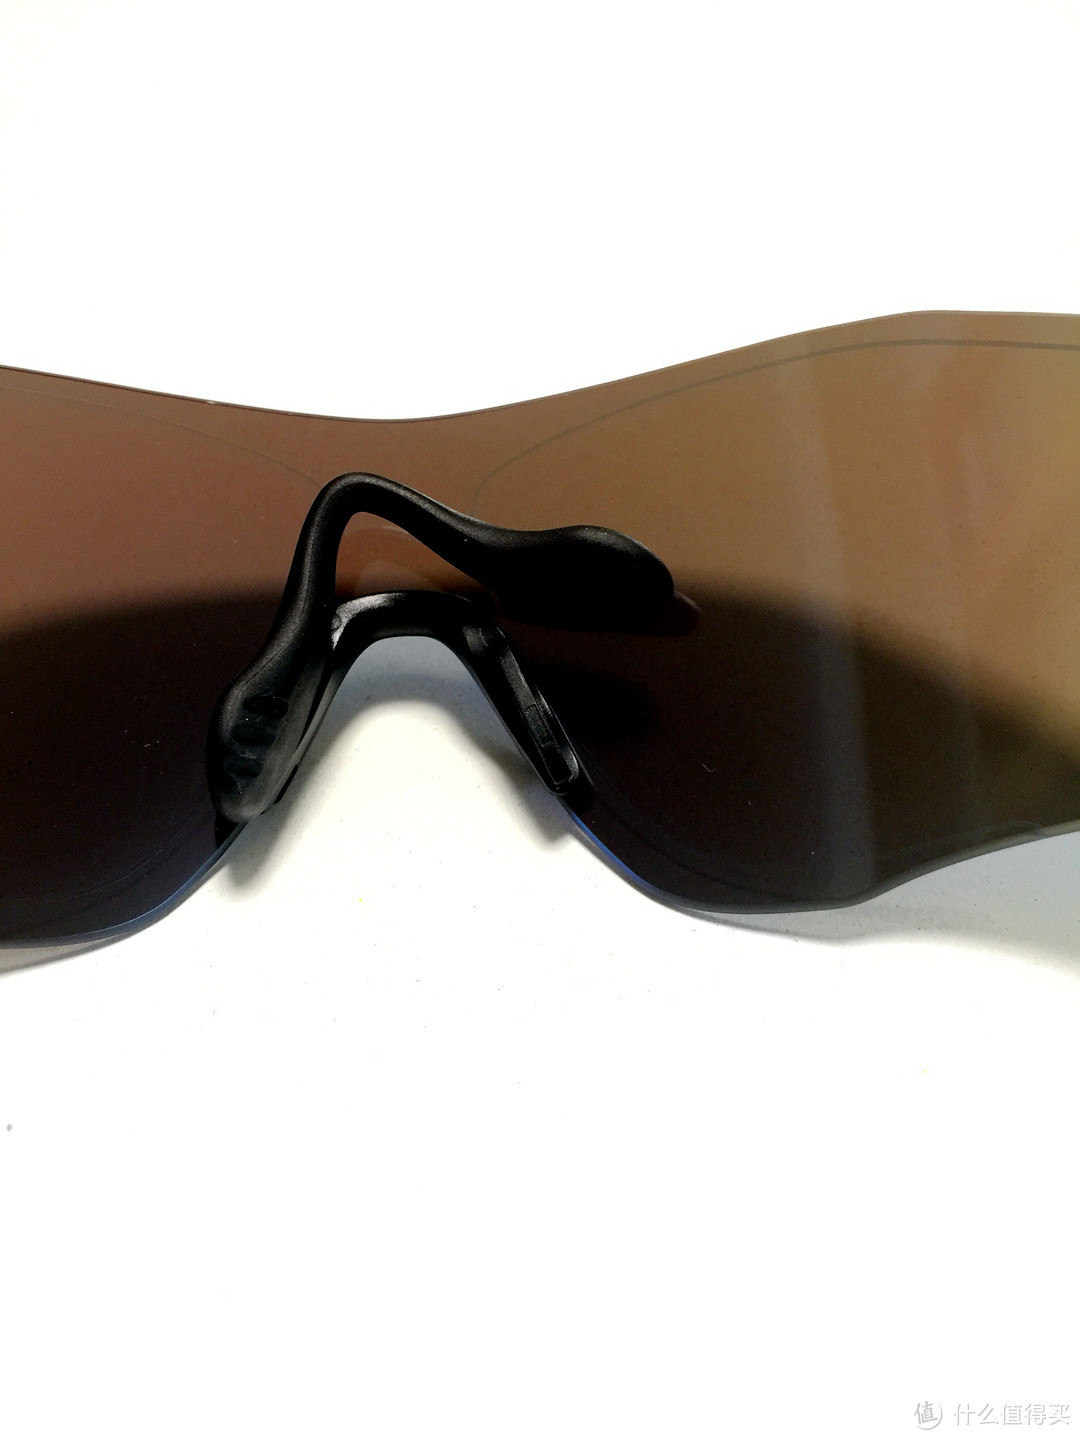 一个好贵的塑料片——意亚首单 Oakley 欧克利 Evzero Path 太阳镜简单开箱